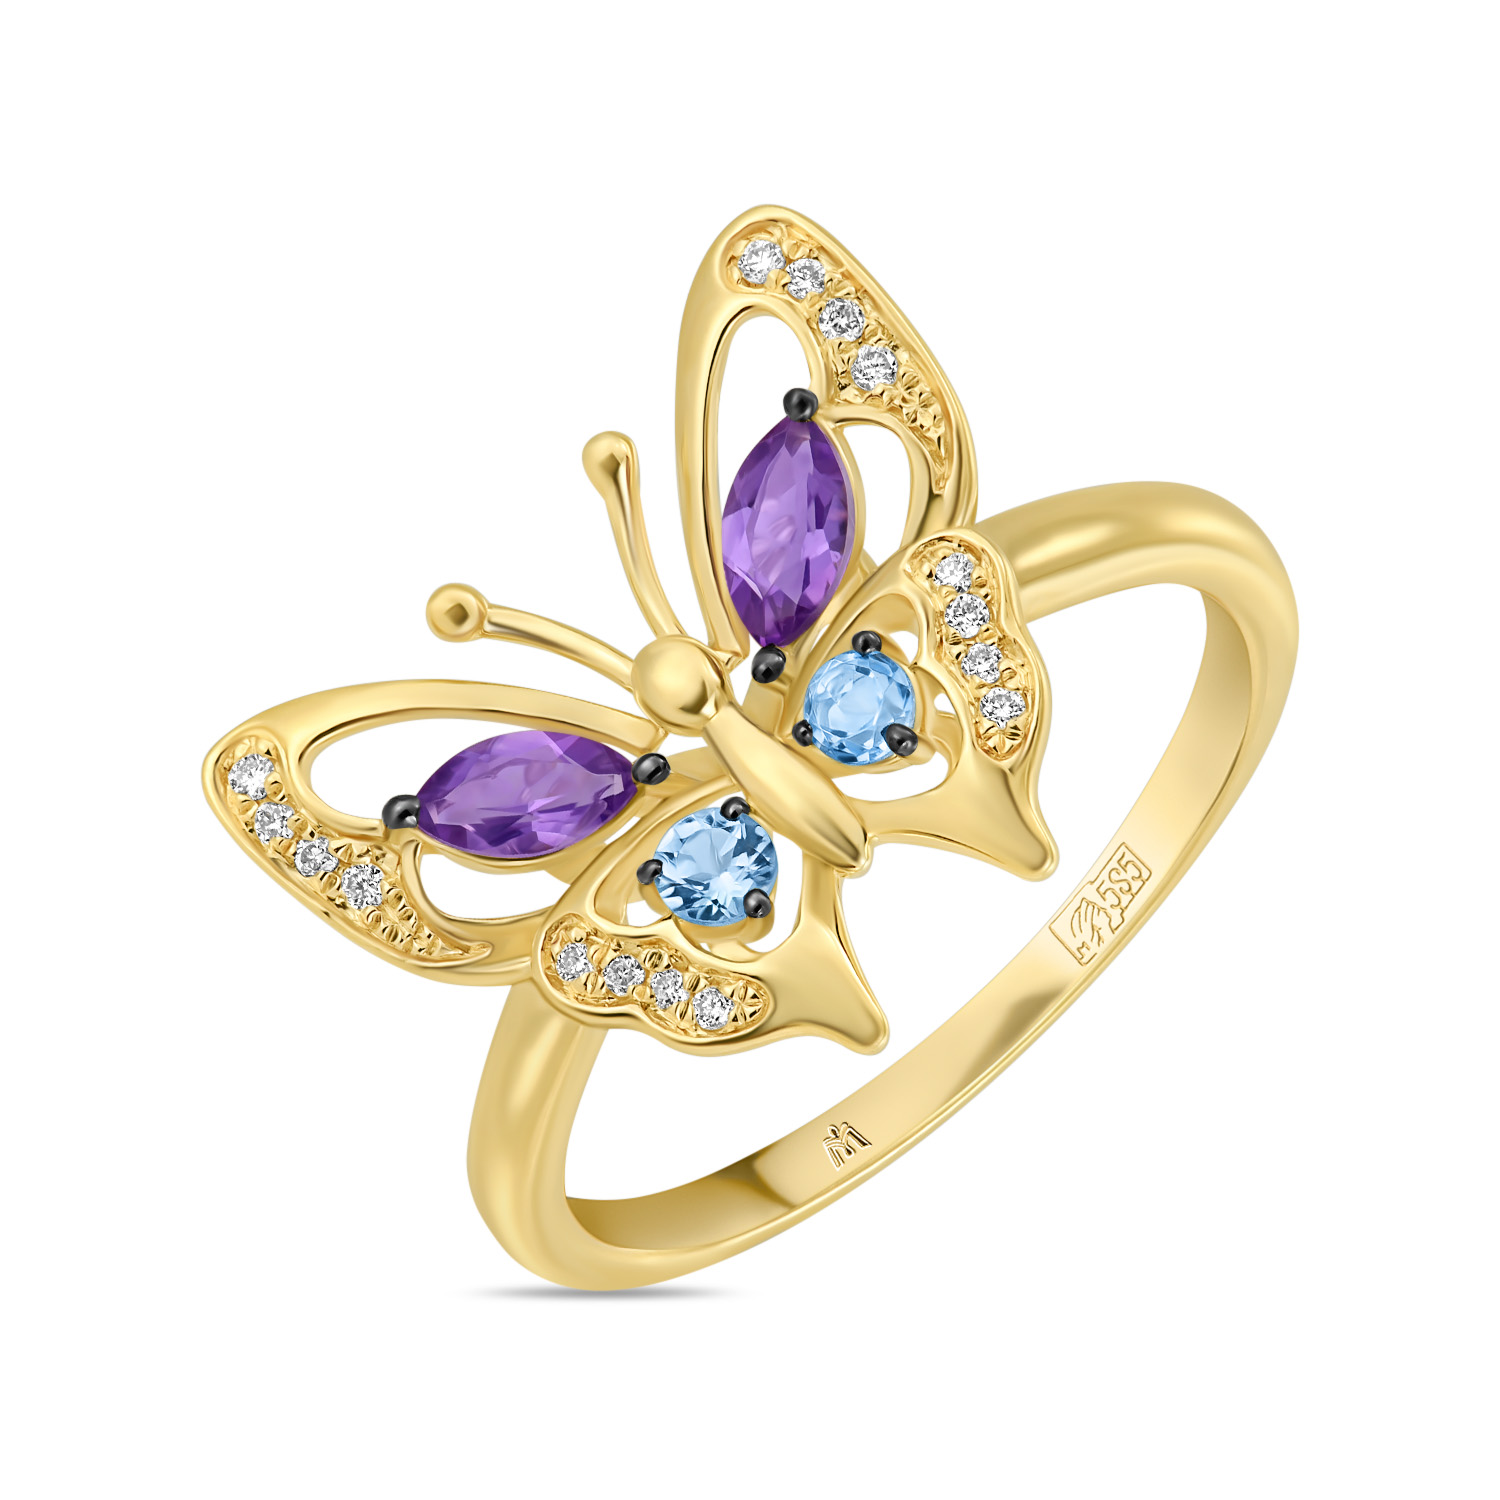 Кольца МЮЗ Золотое кольцо с аметистами, топазом и бриллиантами кольца мюз золотое кольцо с аметистами топазом бриллиантами и жемчугом